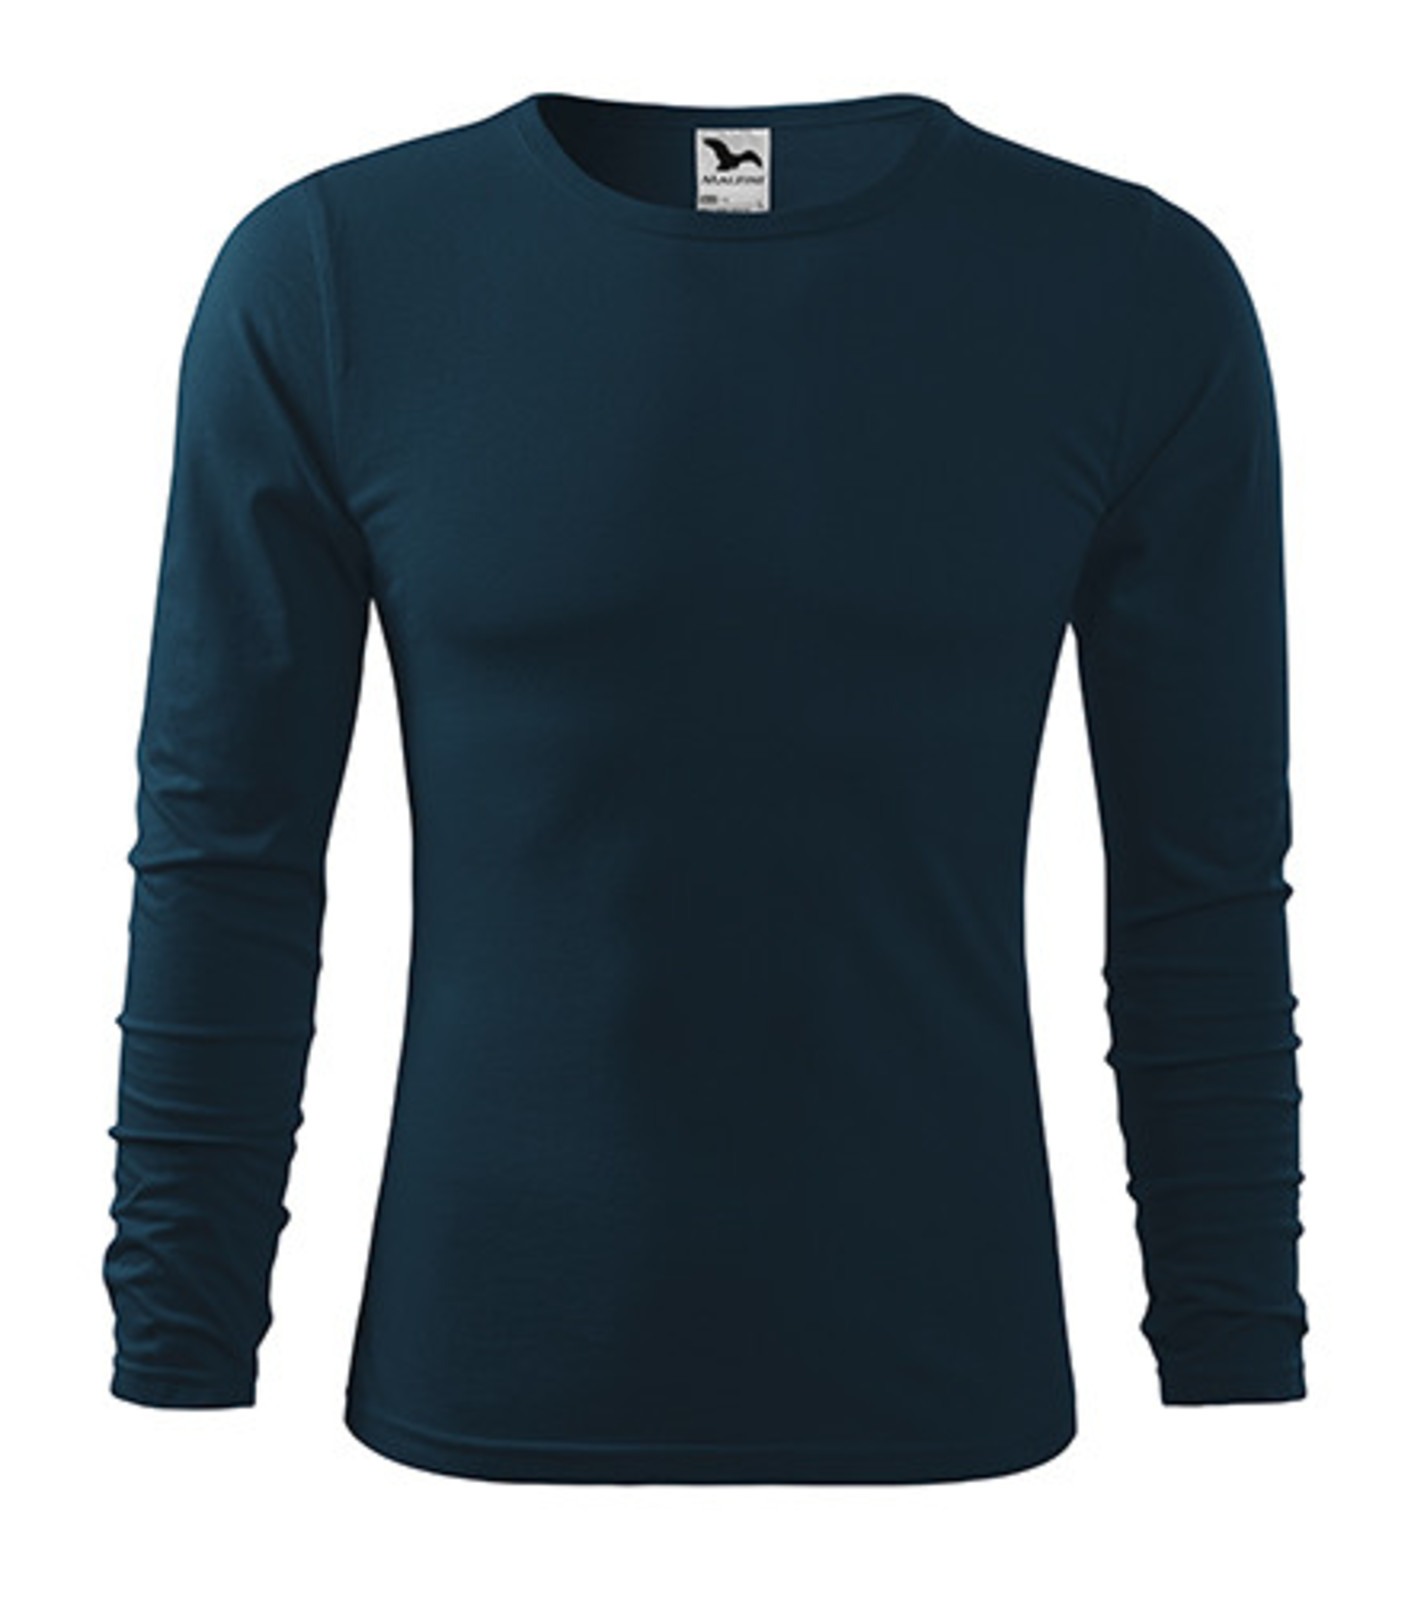 Pánske bavlnené tričko s dlhým rukávom Malfini Fit-T 119 - veľkosť: XXL, farba: tmavo modrá